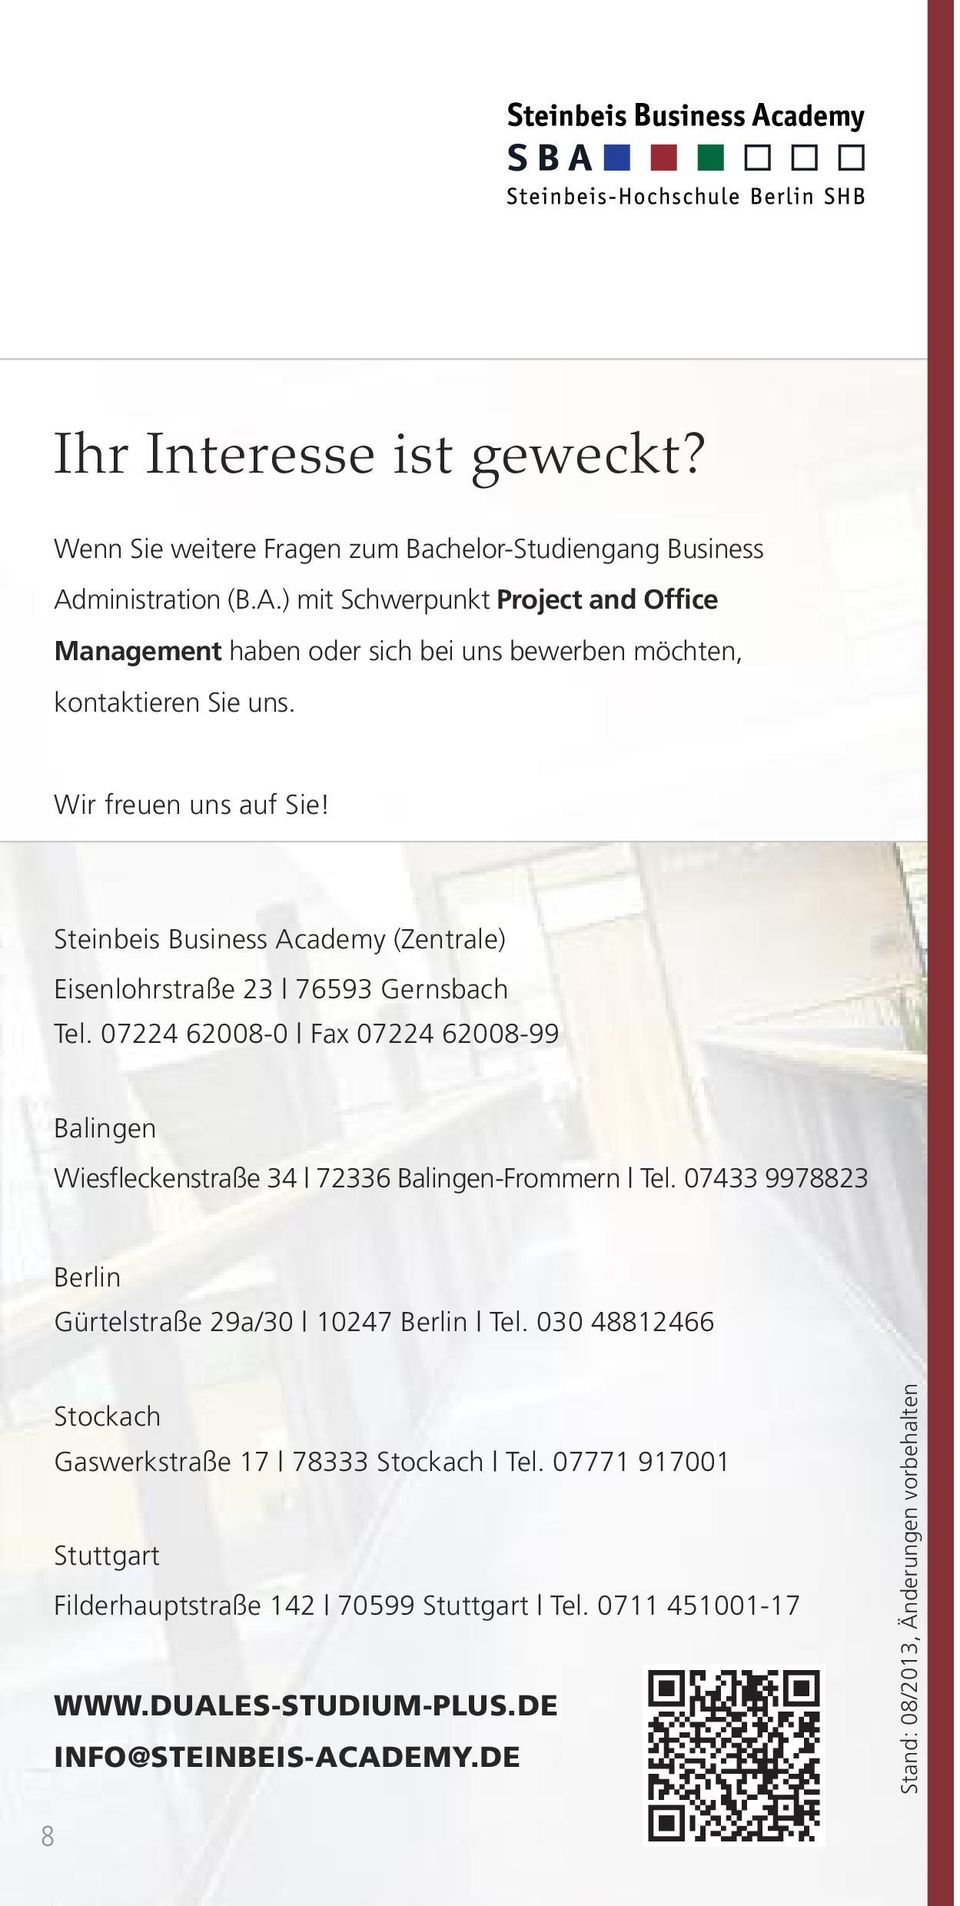 Steinbeis Business Academy (Zentrale) Eisenlohrstraße 23 76593 Gernsbach Tel. 07224 62008-0 Fax 07224 62008-99 Balingen Wiesfleckenstraße 34 72336 Balingen-Frommern Tel.